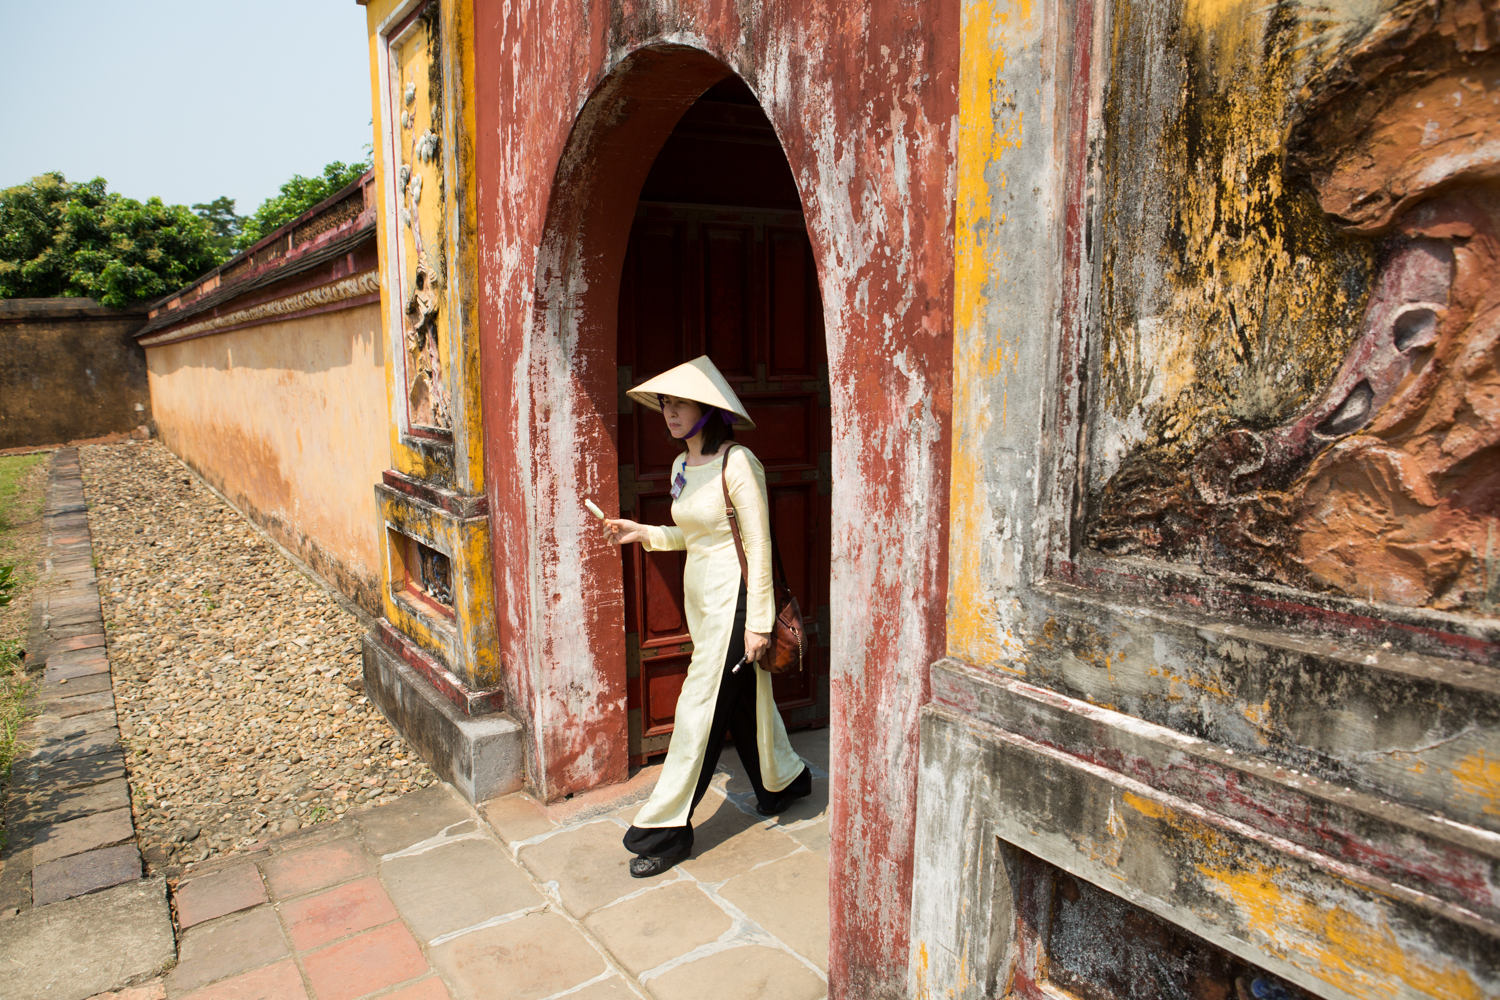 Eric Kruszewski photographs travel at The Royal Palace in Hue, Vietnam.